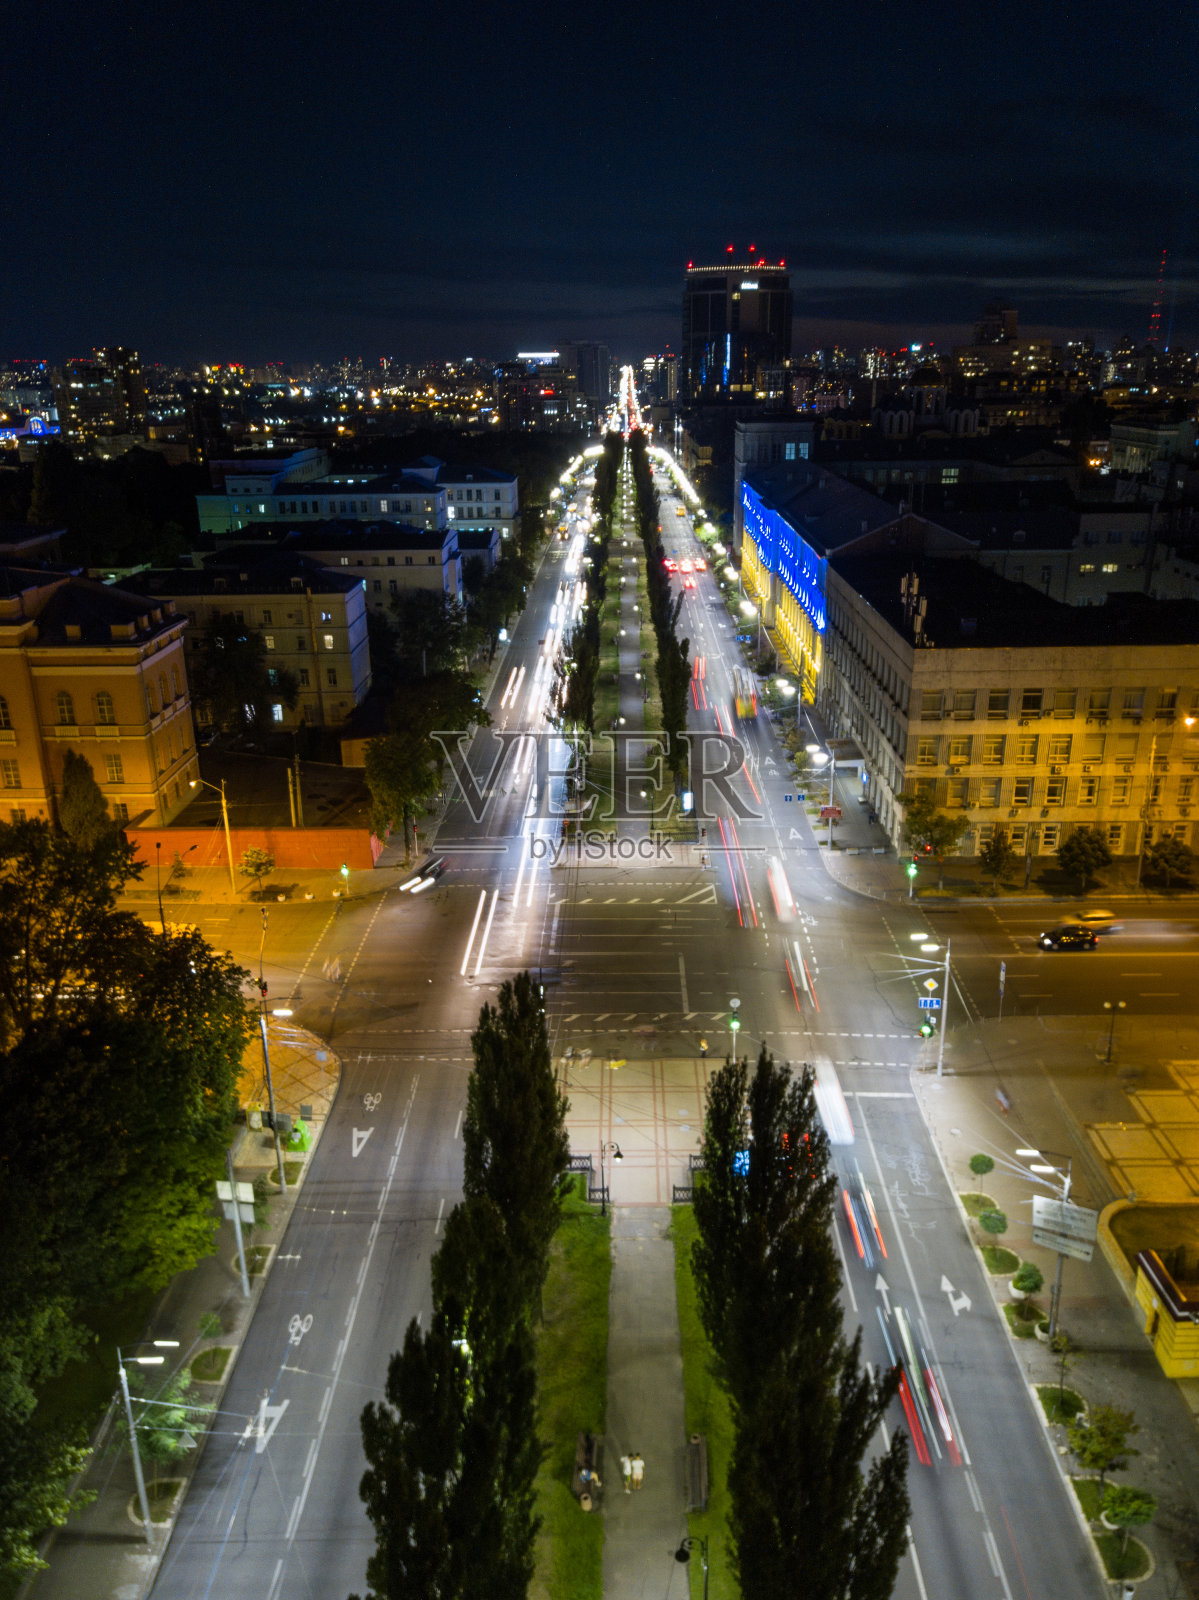 基辅市中心夜路。照片摄影图片